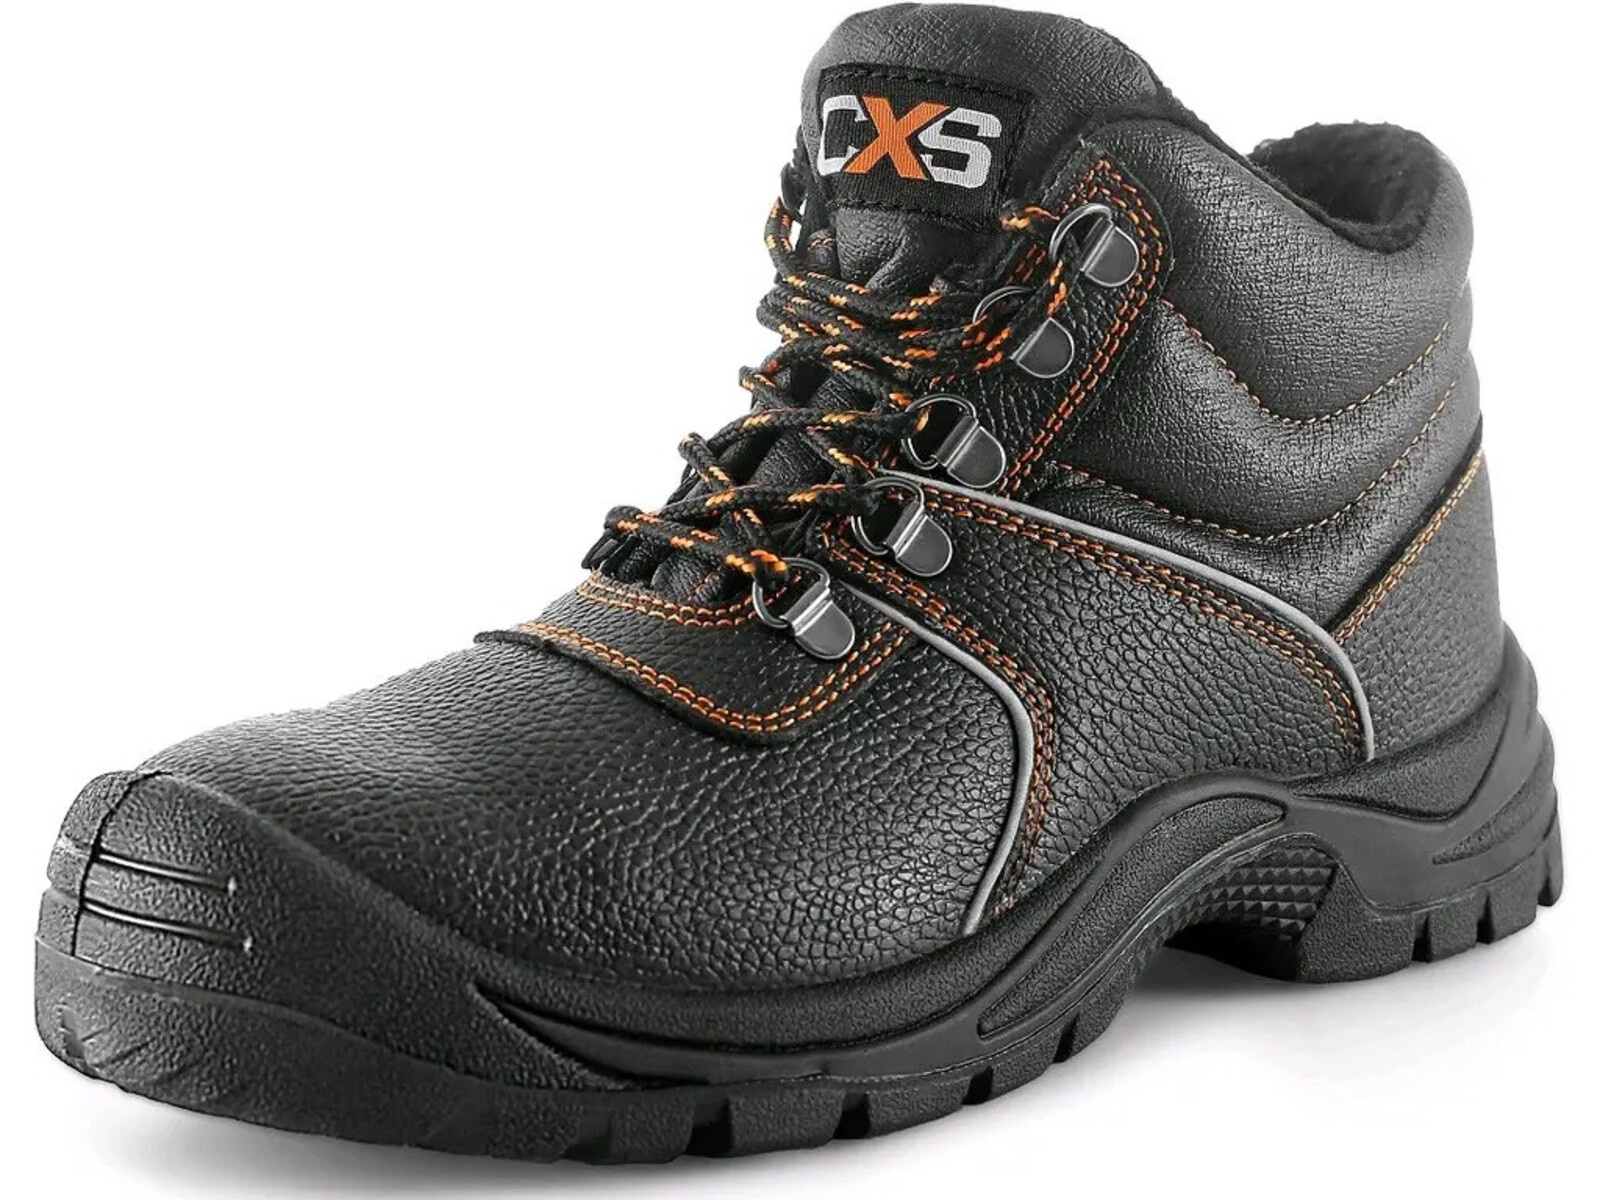 Zimná bezpečnostná členková obuv CXS Stone Apatit Winter S3 SRC - veľkosť: 38, farba: čierna/oranžová